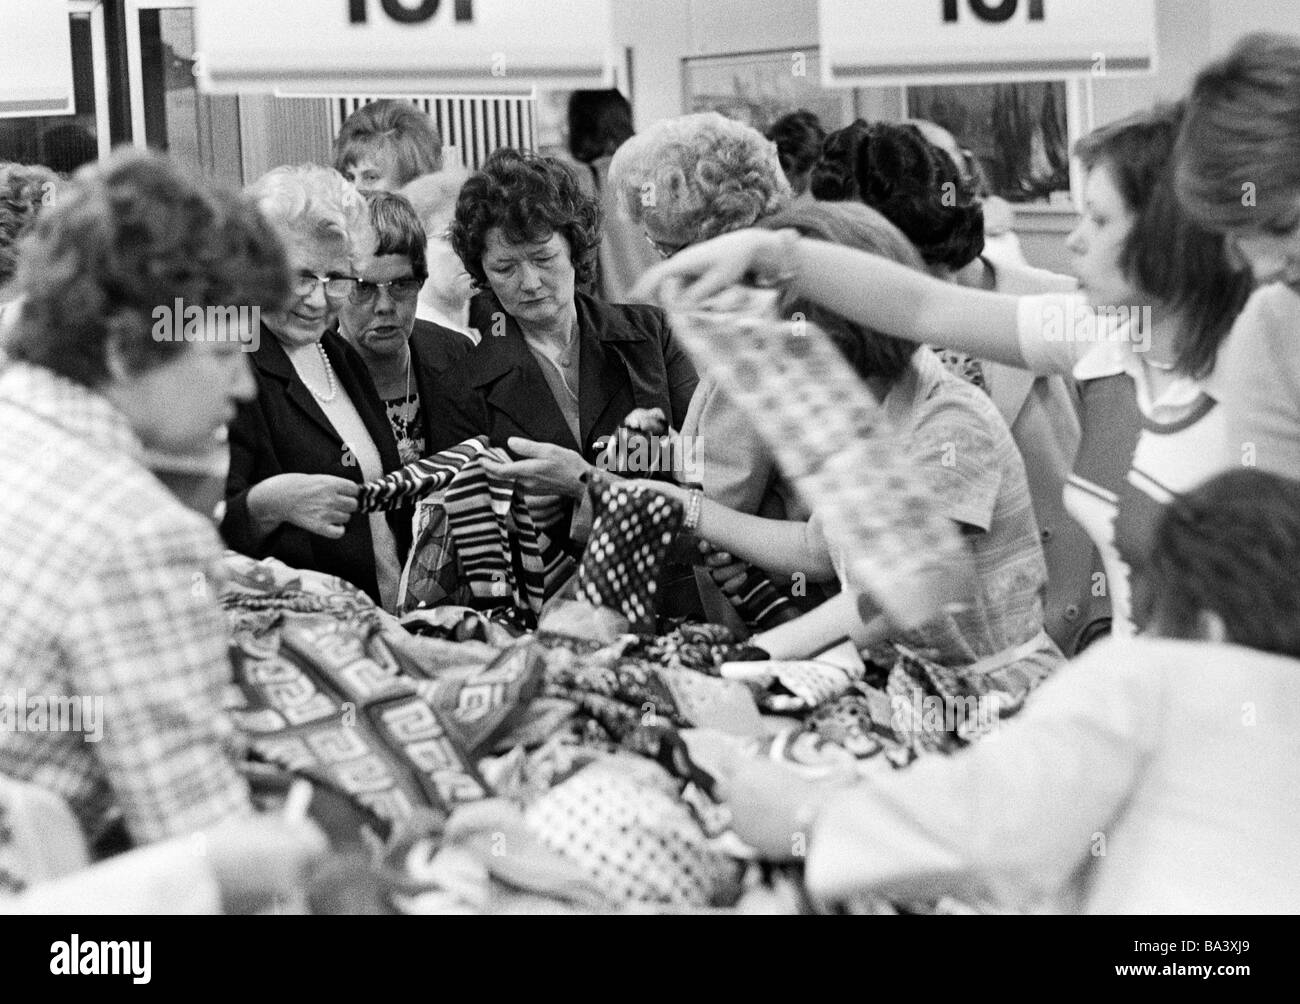 Années 70, photo en noir et blanc, les gens sur l'expédition shopping, clôture de la vente, plusieurs femmes recherchez les aubaines d'un tableau de charité Banque D'Images